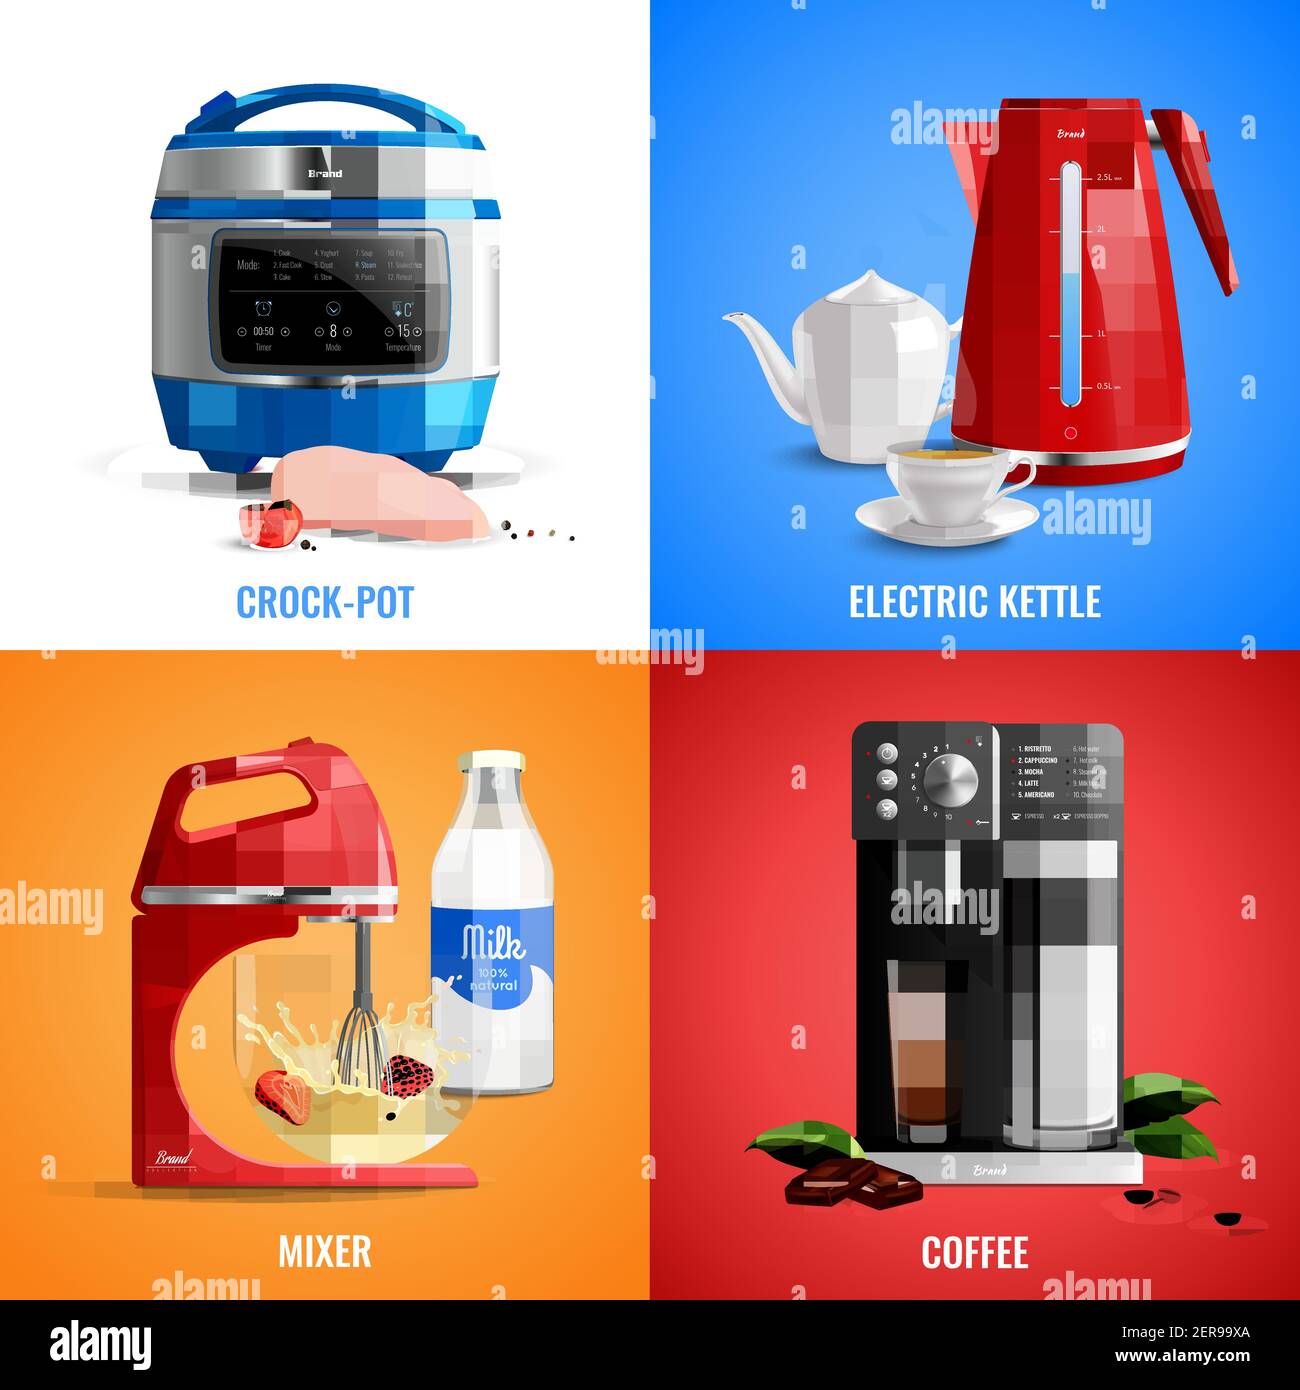 Haushalt Küchengeräte 2x2 Design-Konzept Set von Kaffeemaschine Mixer elektrischer Wasserkocher crock Topf realistische Vektor-Illustration Stock Vektor